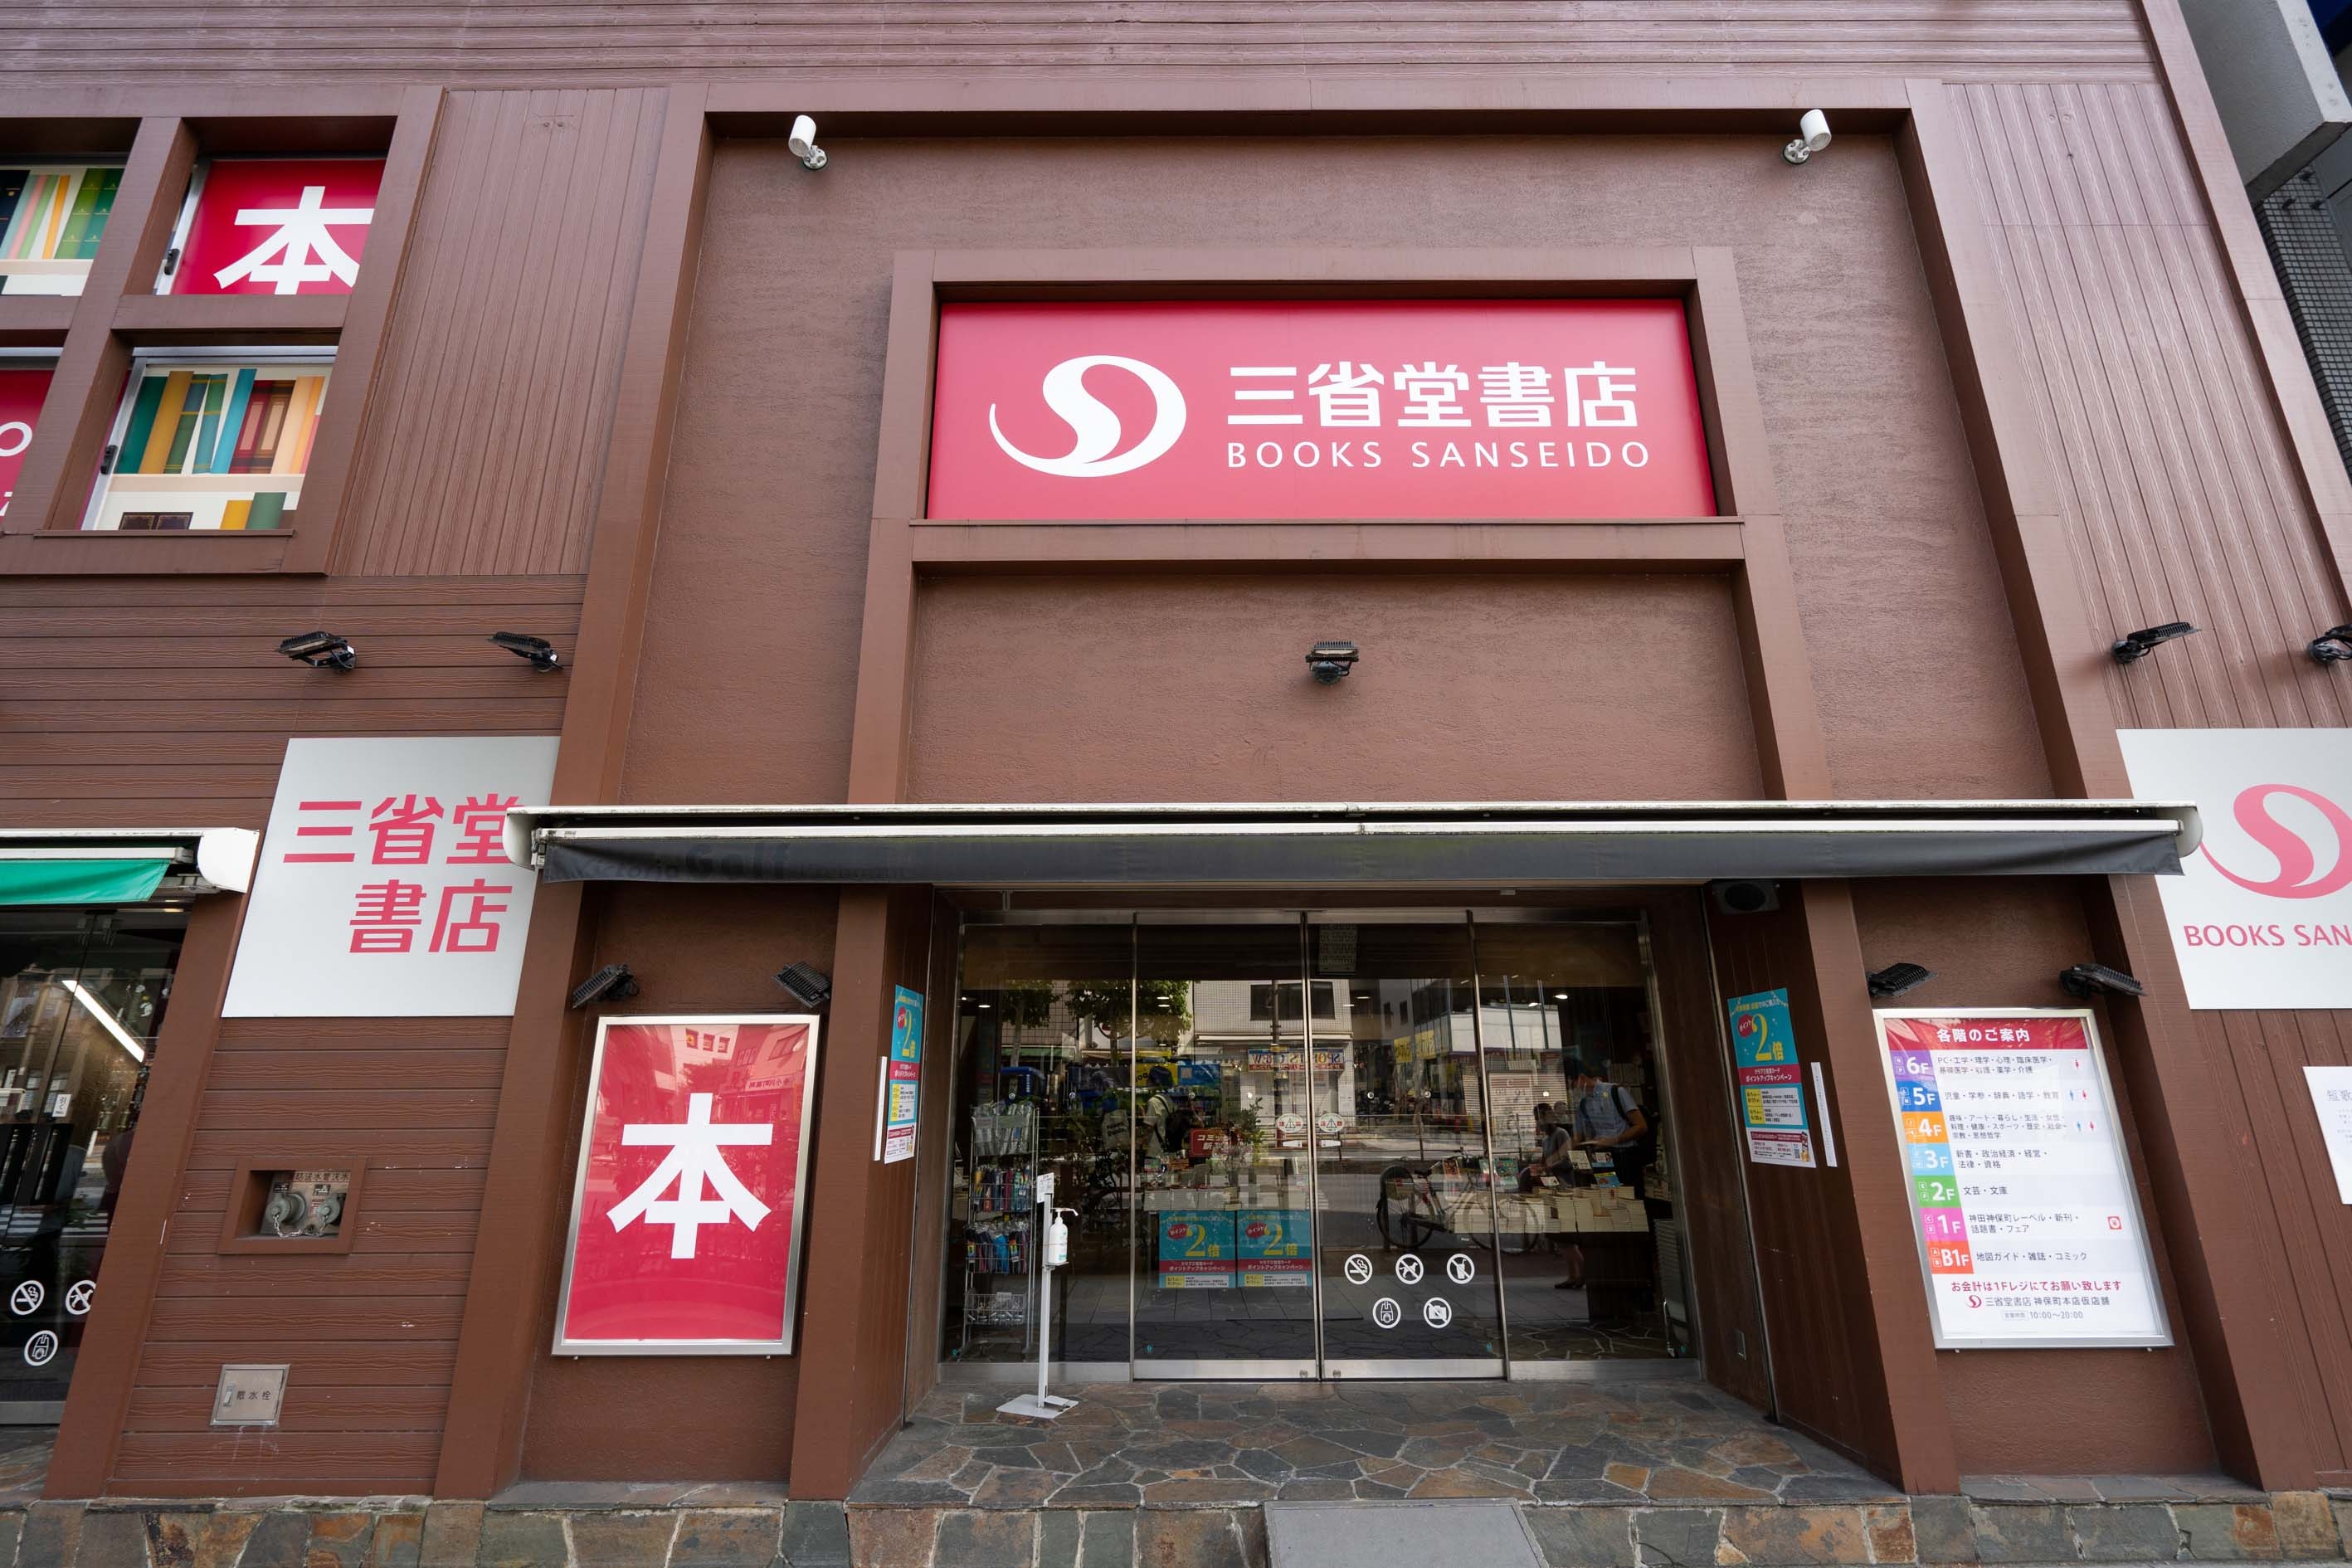 三省堂書店本店は、現在、本店から徒歩数分のところに構えた仮店舗で営業中